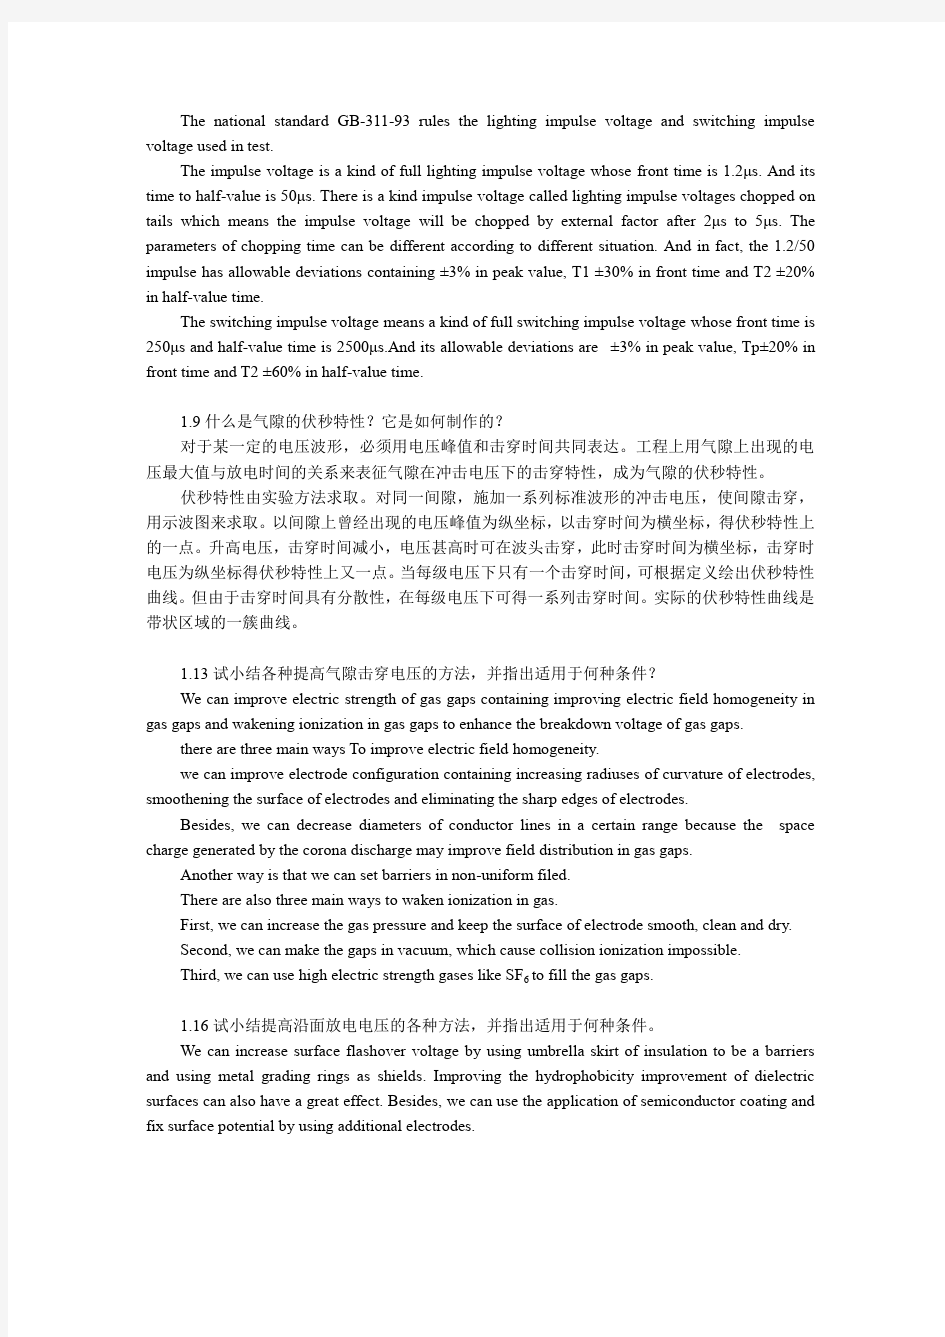 重庆大学电气学院 高电压技术双语课课后作业 自己做的,仅供参考